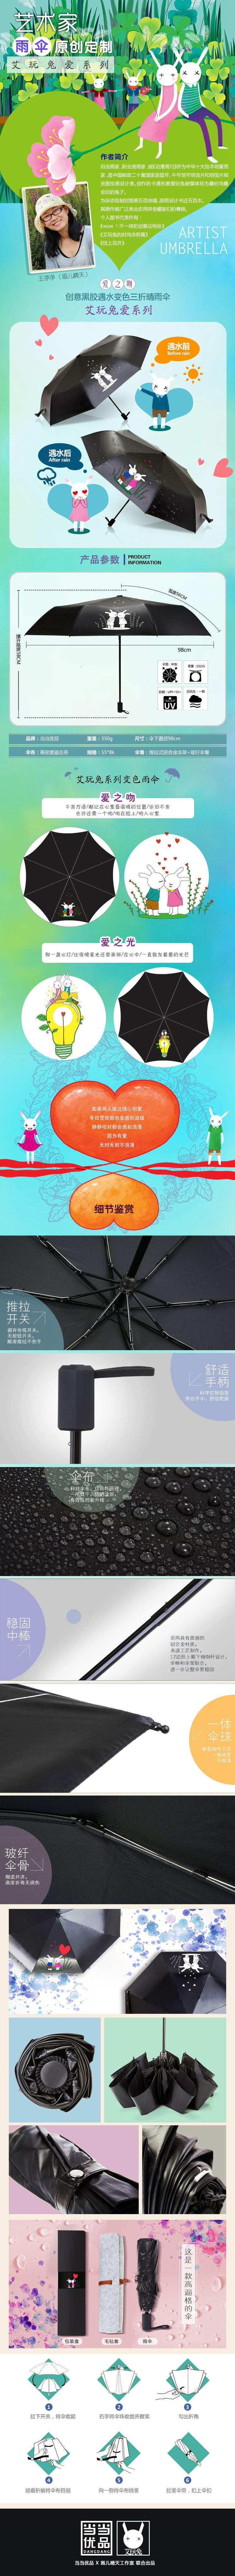 王净净与当当优品合作的艺术家原创变色雨伞